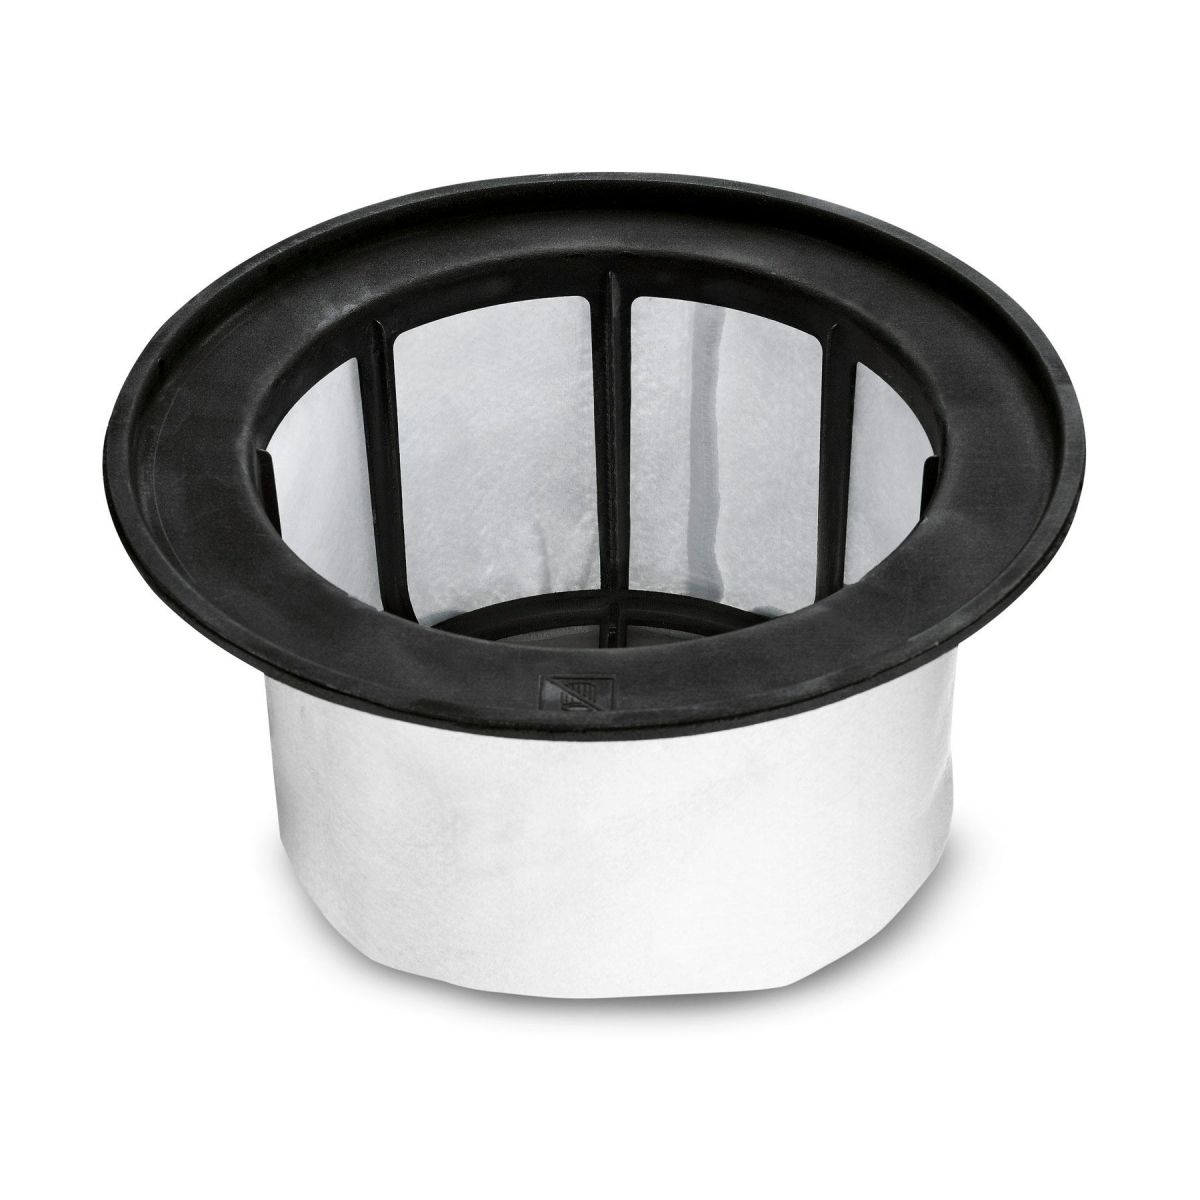 Фильтр Karcher 9.771-117.0 фильтр поролоновый для влажной уборки для пылесосов fubag серии wd